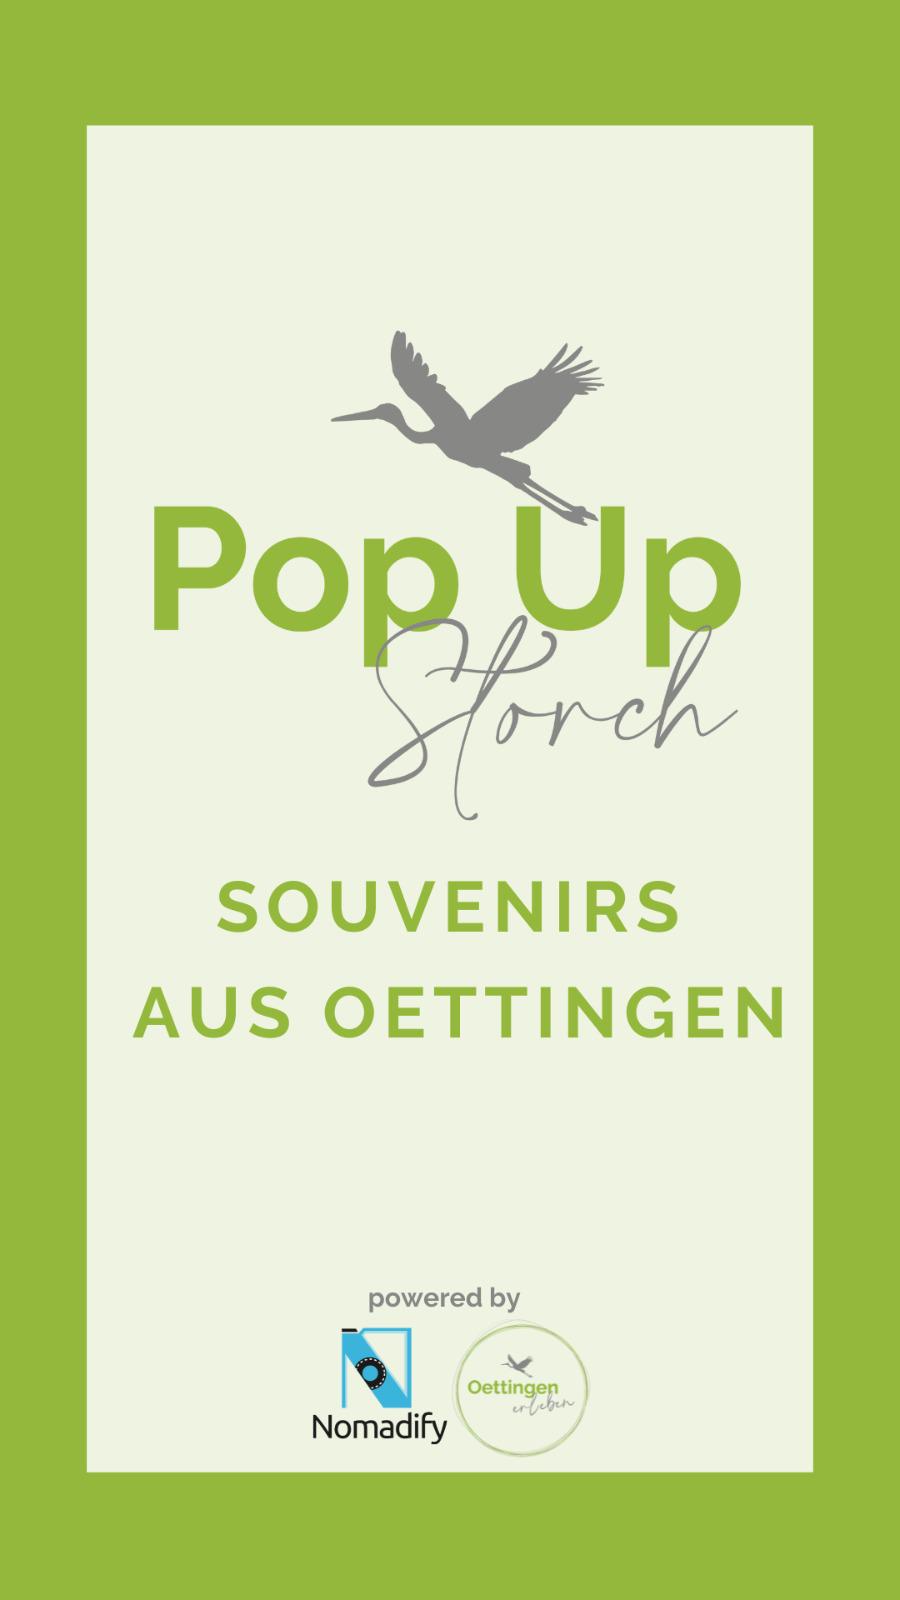 Eröffnung unseres Popup Storchs am 02. Juli 2021